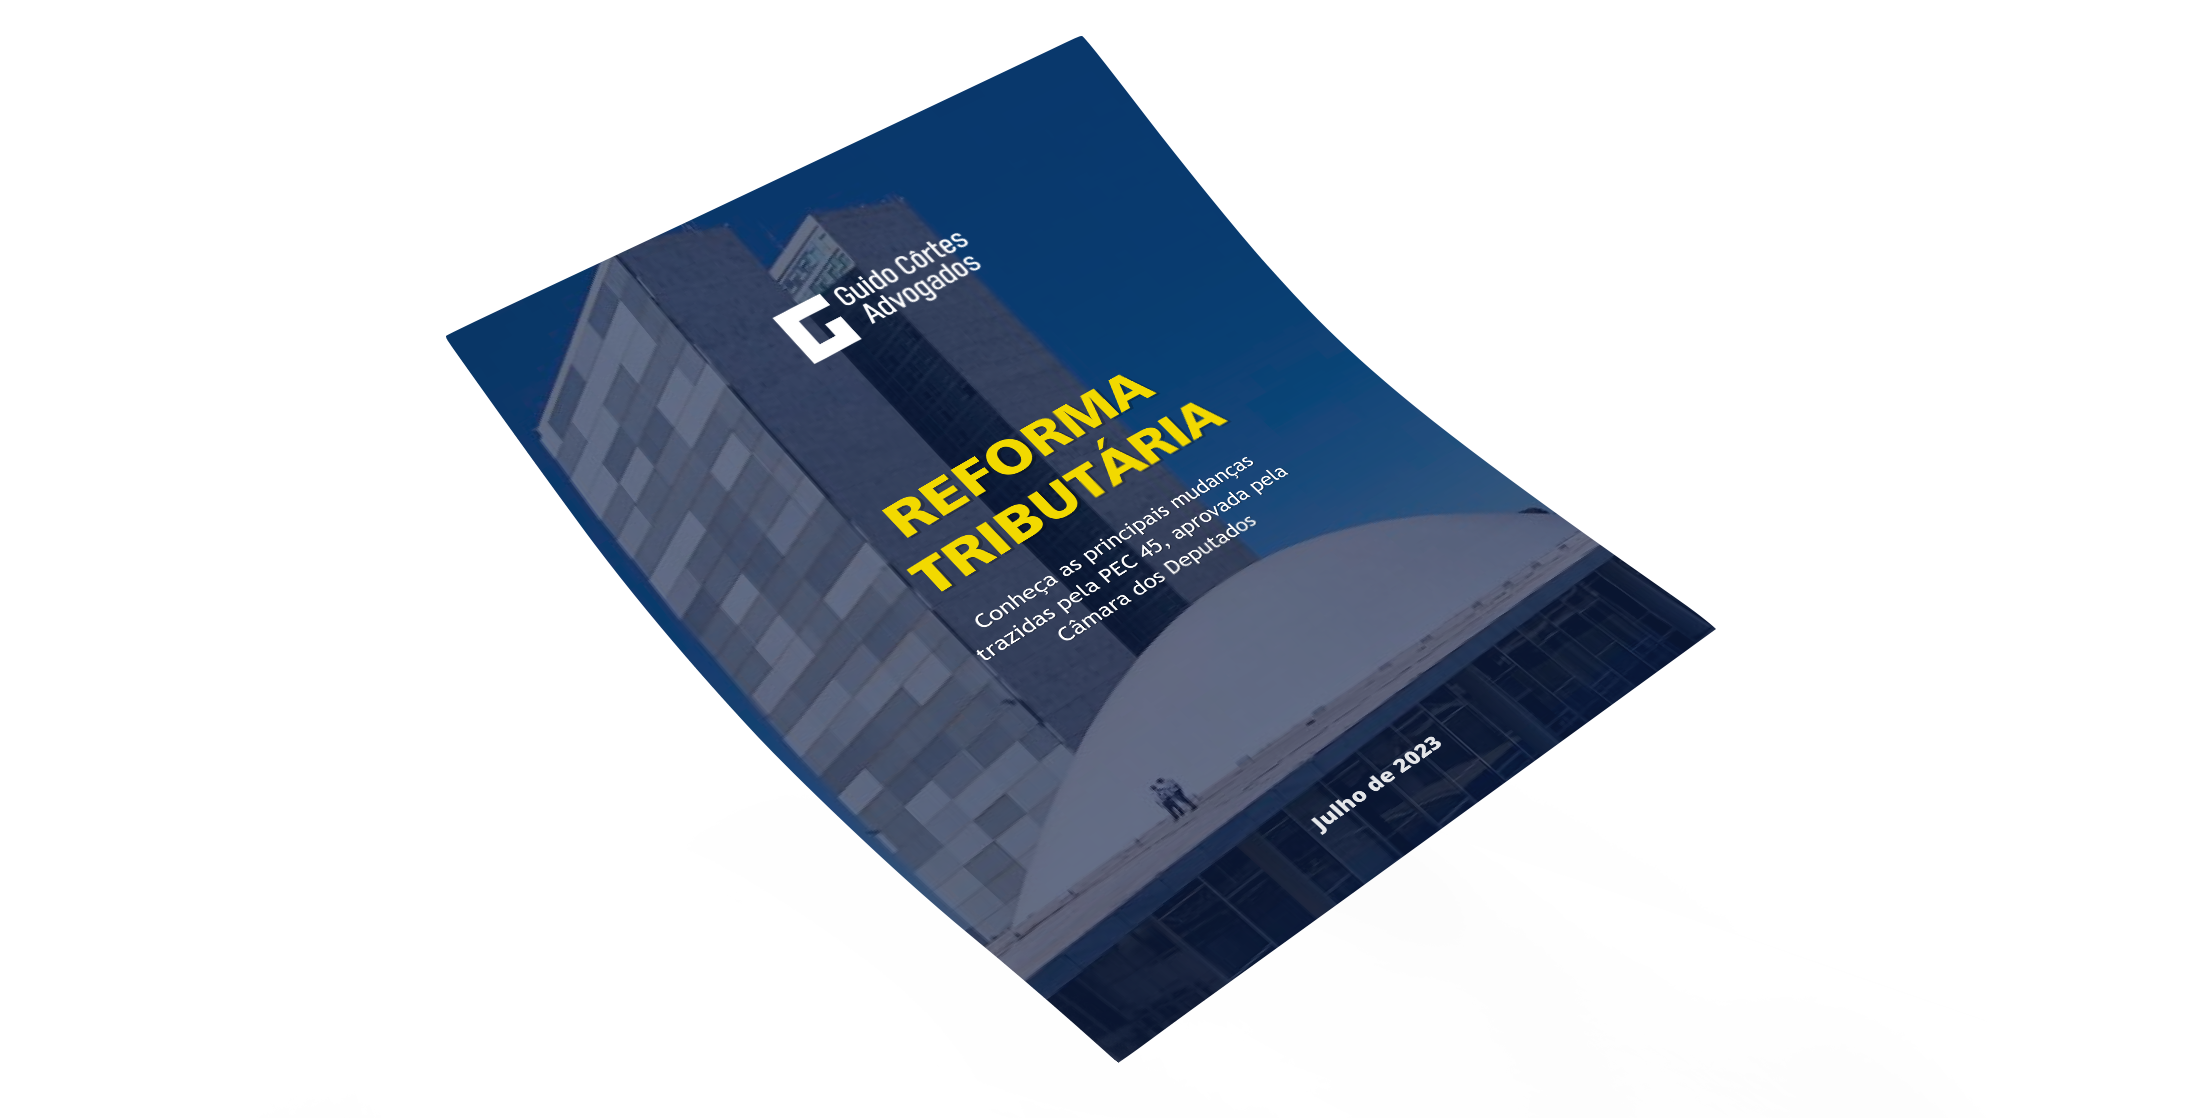 Capa do informativo, com capa azul, e em cima o texto "Reforma Tributária: conheça as principais mudanças trazidas pela PEC 45".